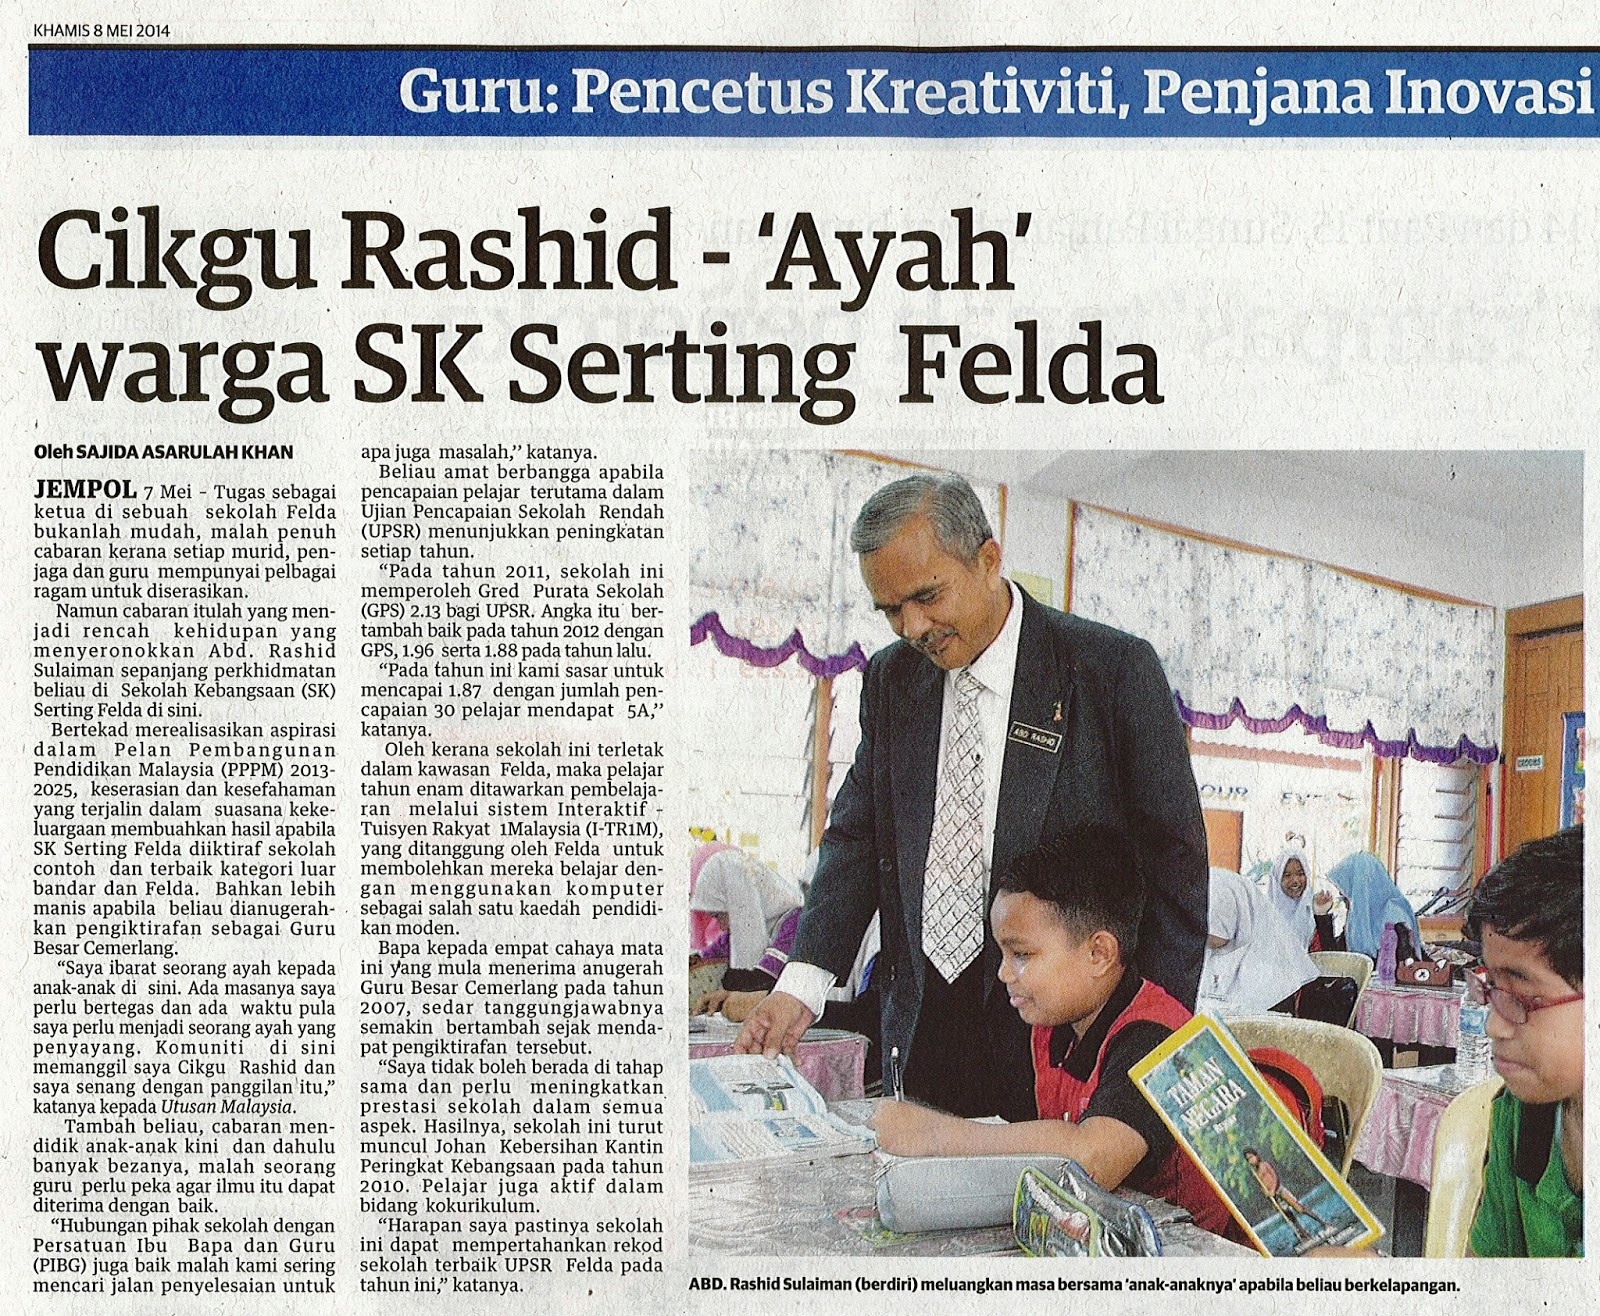 Hari Guru ke 43 di Keratan Akhbar Berita Harian, Harian Metro, Utusan Malaysia dan News Straits Times